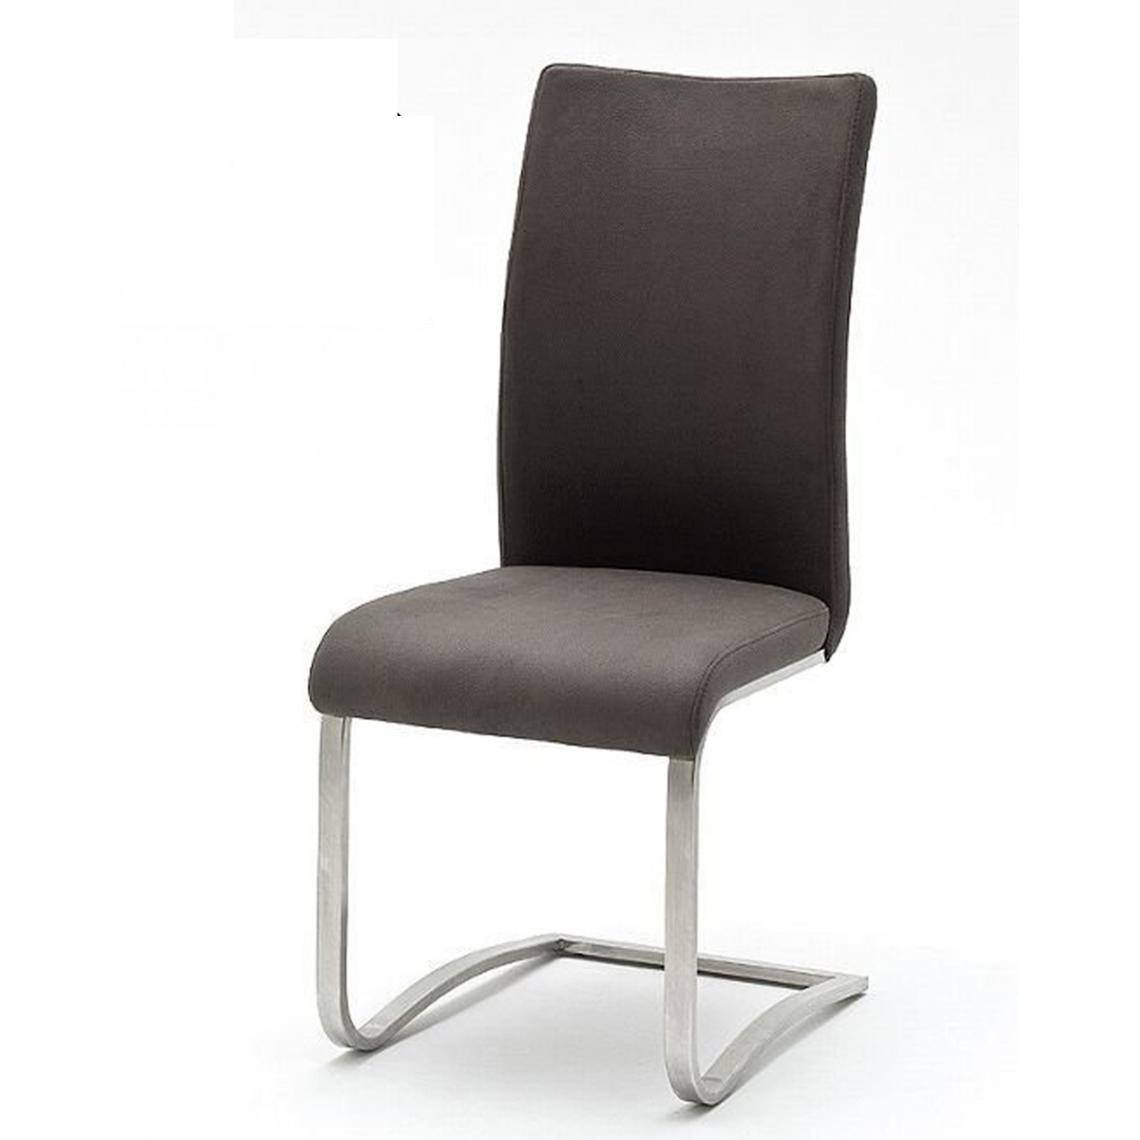 Pegane - Lot de 2 chaises en acier et polyester coloris gris - L.43 x H.103 x P.52 cm - Chaises